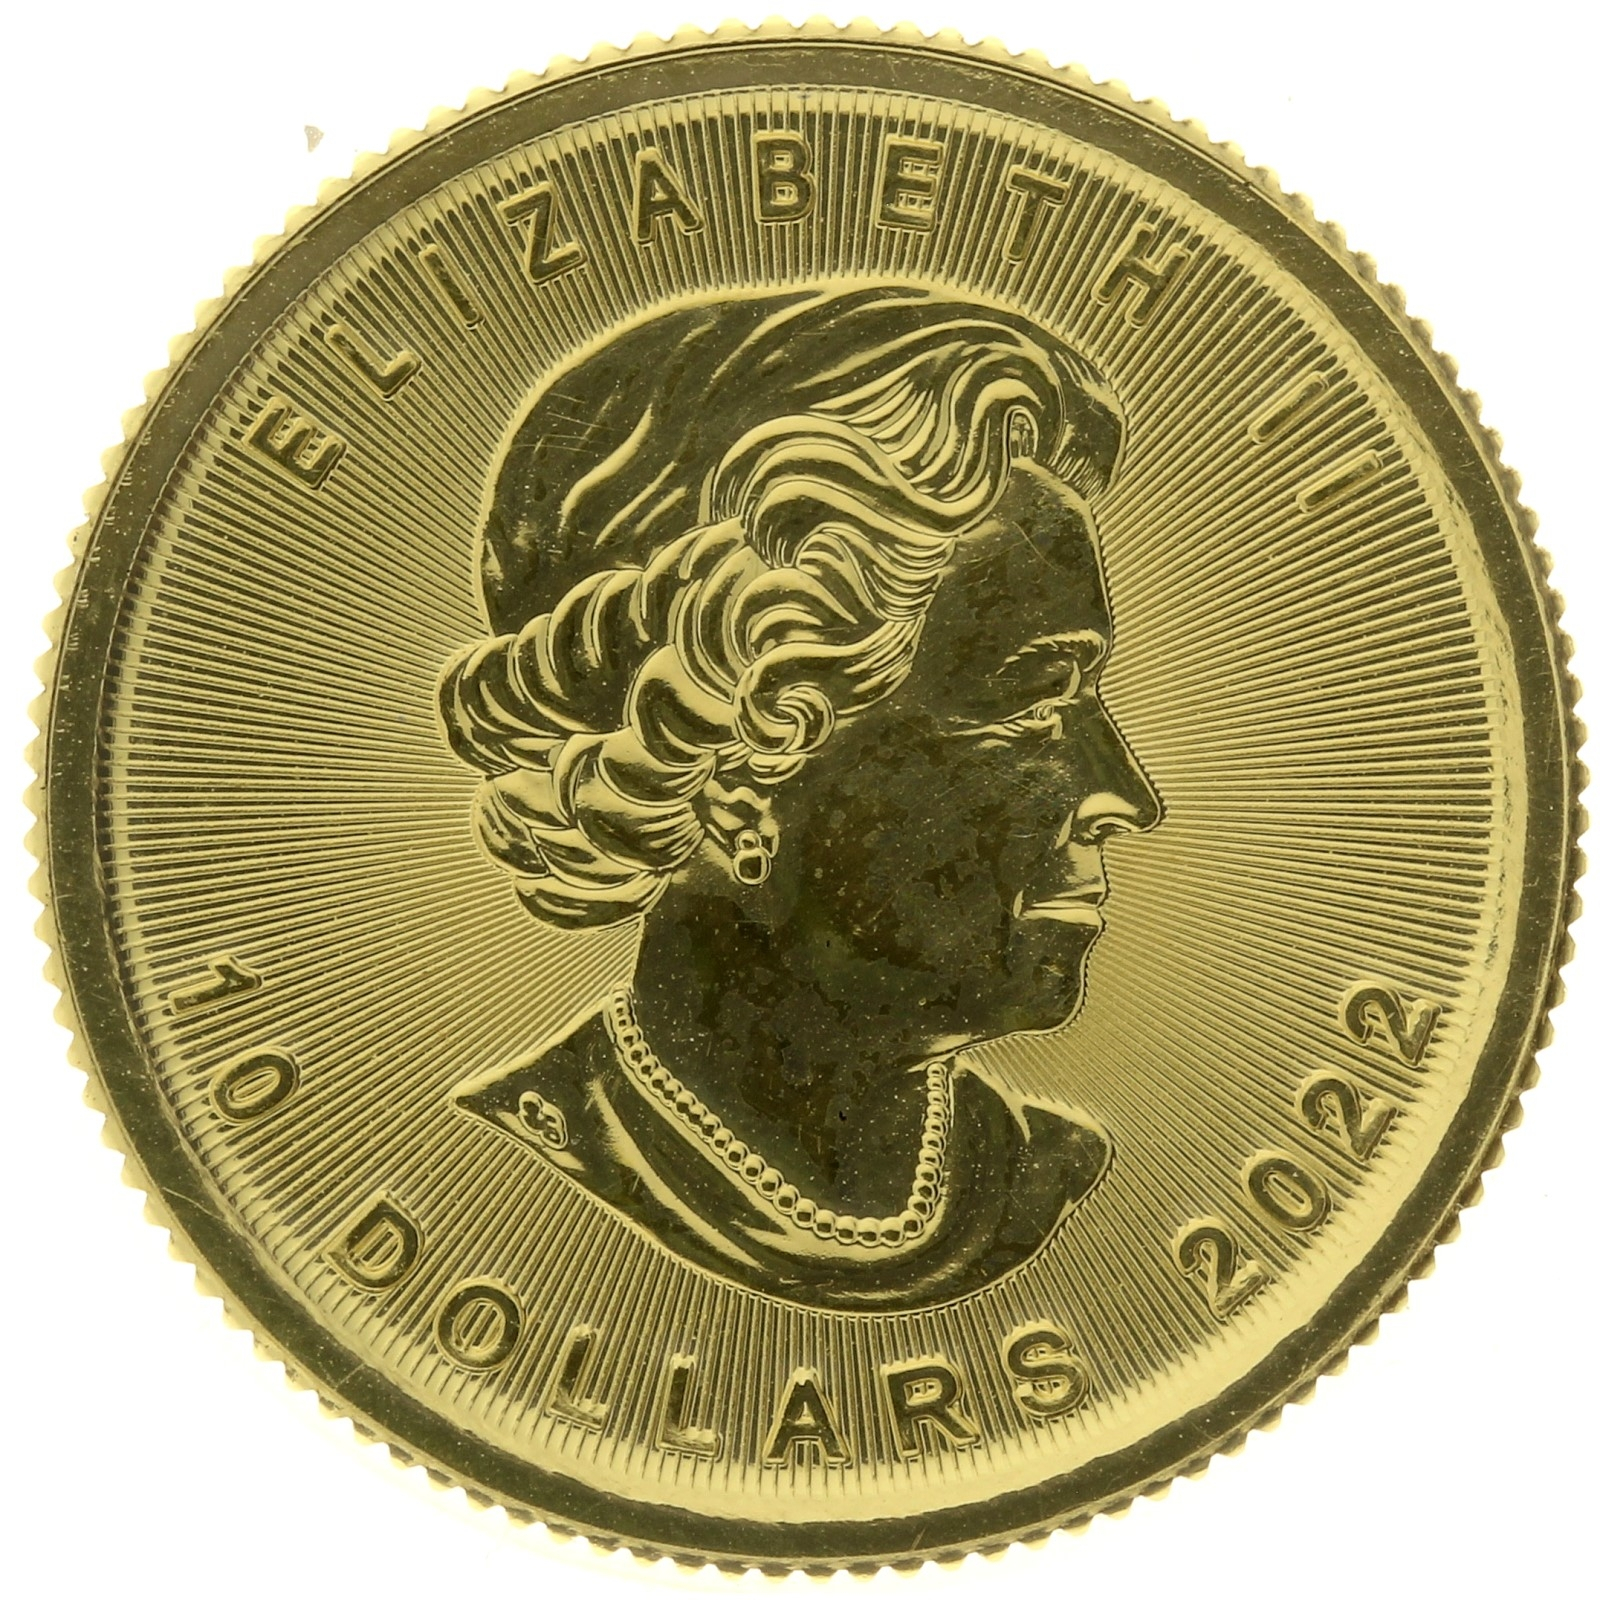 Canada - 10 dollars - 2022 - maple leaf - 1/4oz